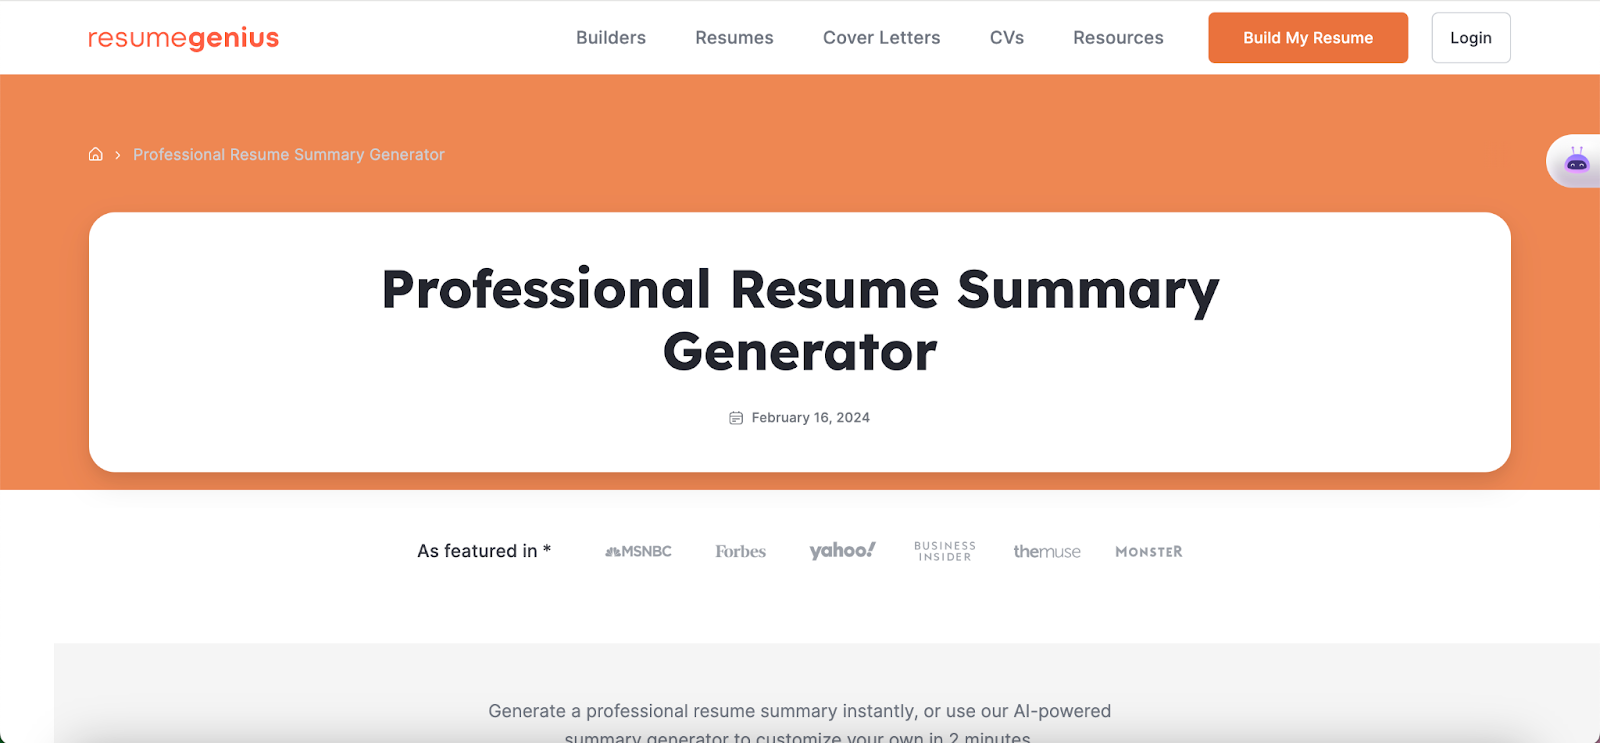 Resume summary generators - Resume genius